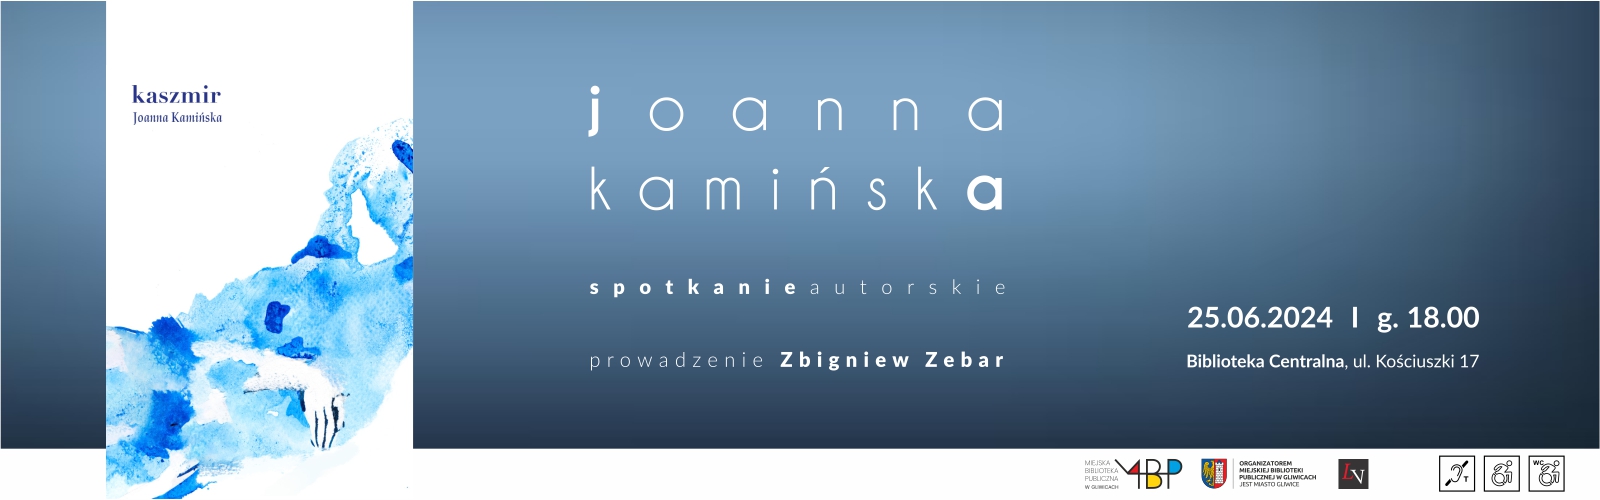 Baner z informacją o spotkaniu autorskim z Joanną Kamińską